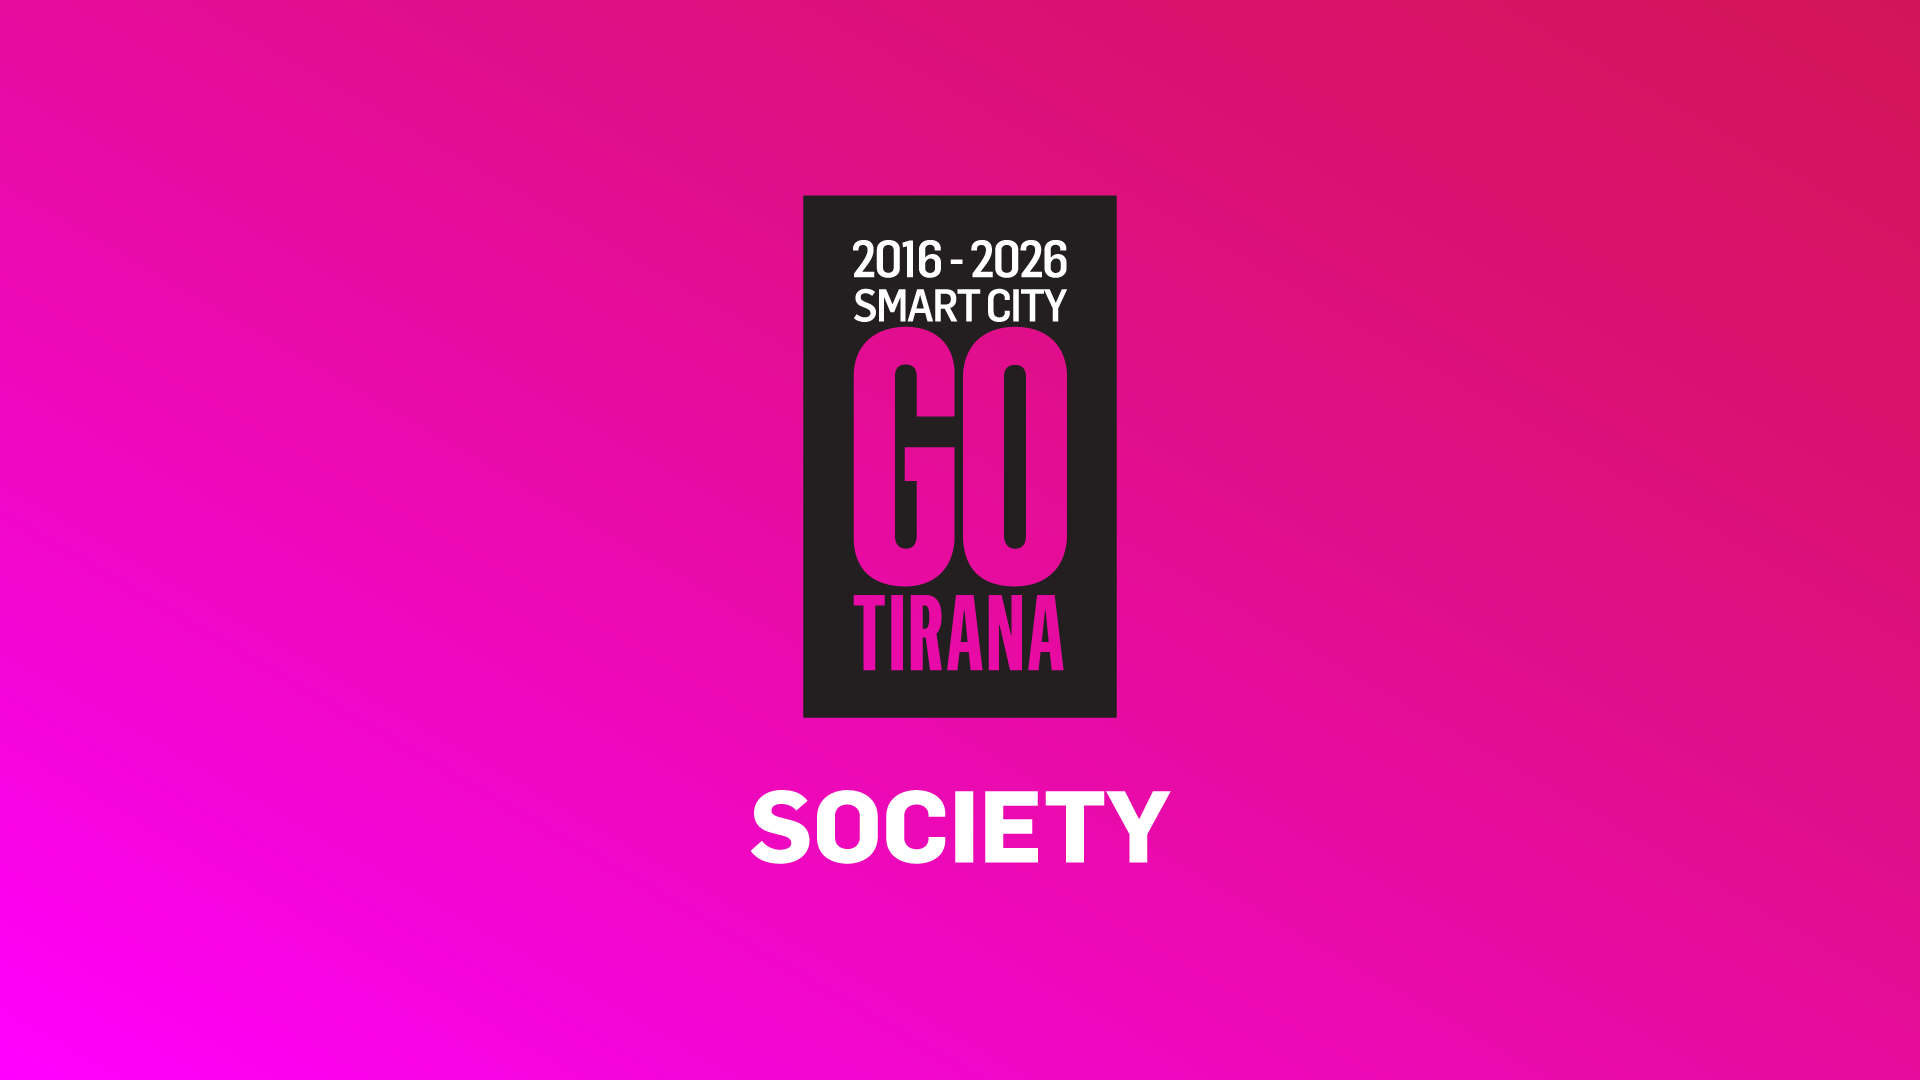 Tirana Smart City - Society